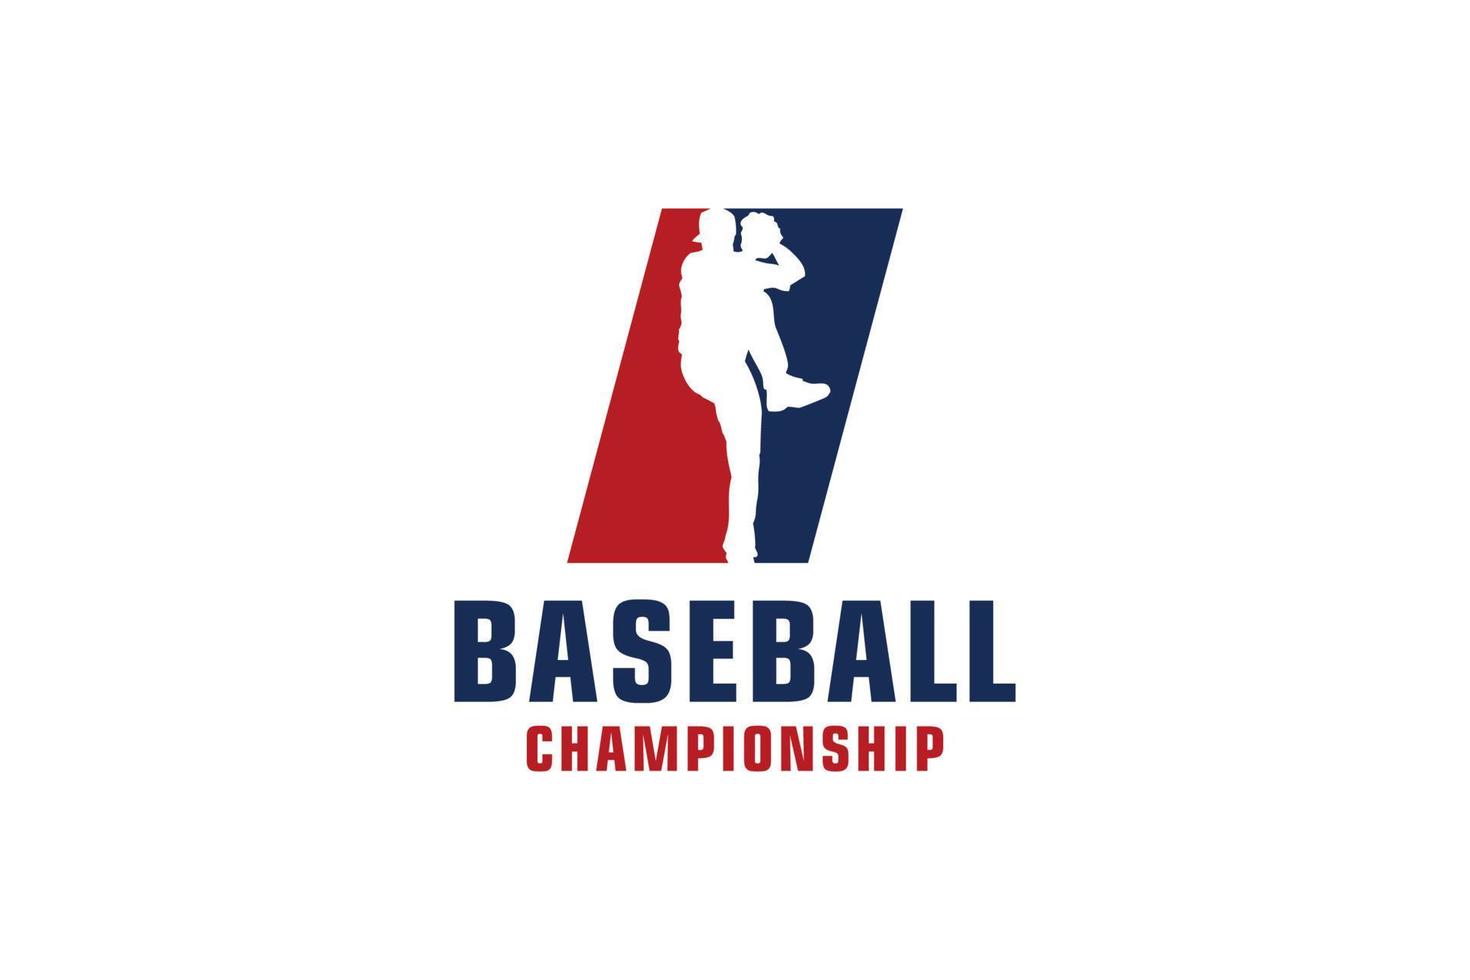 bokstaven i med baseball-logotypdesign. vektor designmallelement för sportlag eller företagsidentitet.